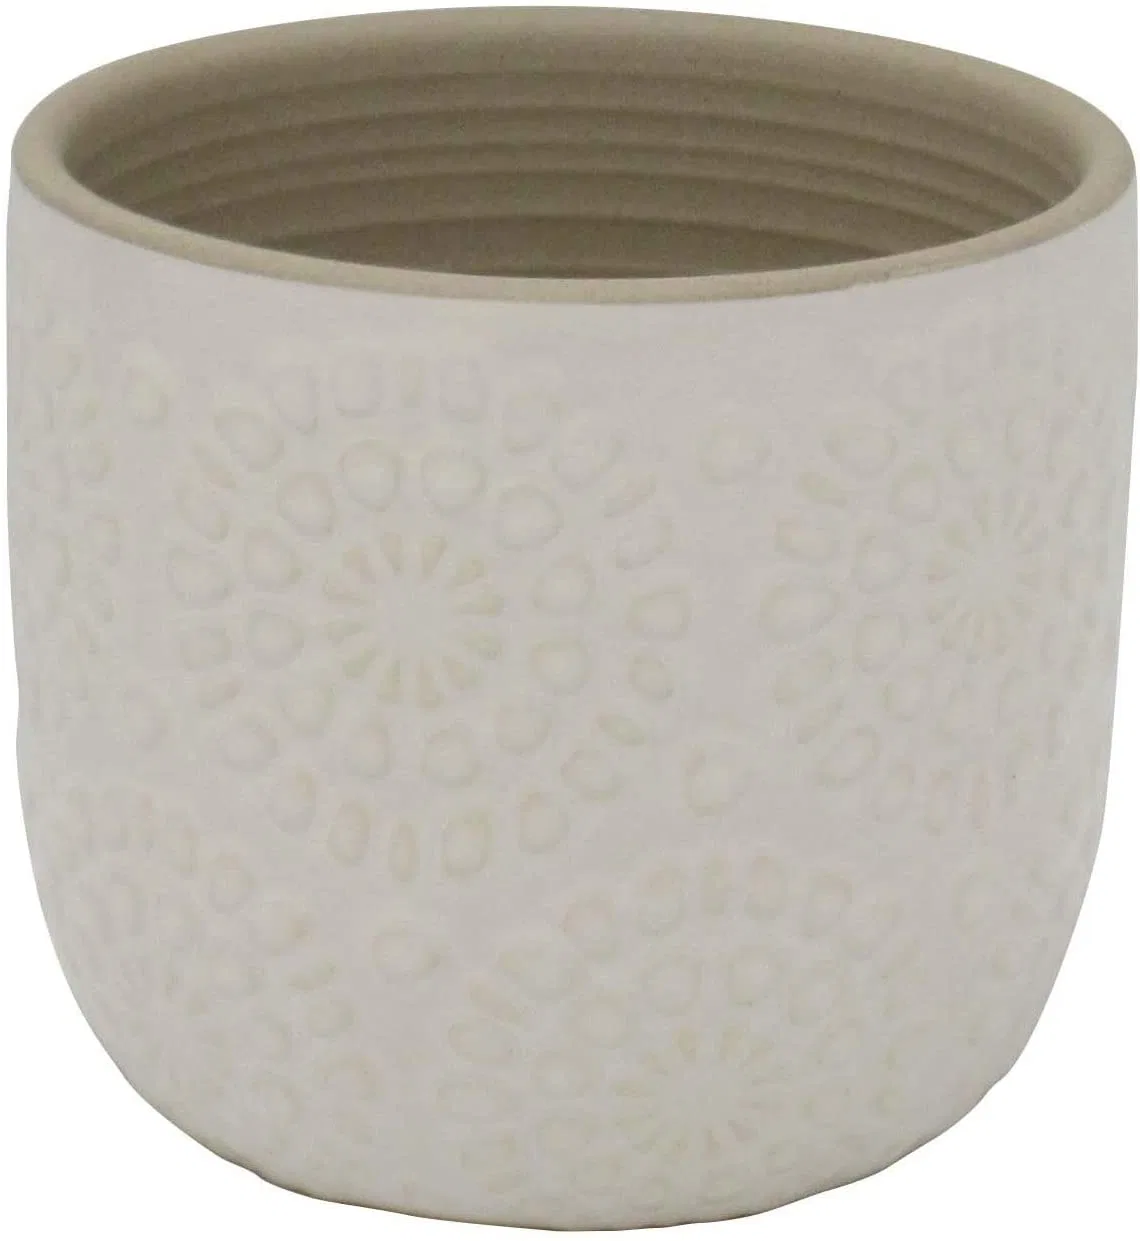 Stone &amp; moderno estampado floral de cerámica de la viga de la sembradora decorativos Maceta blanco